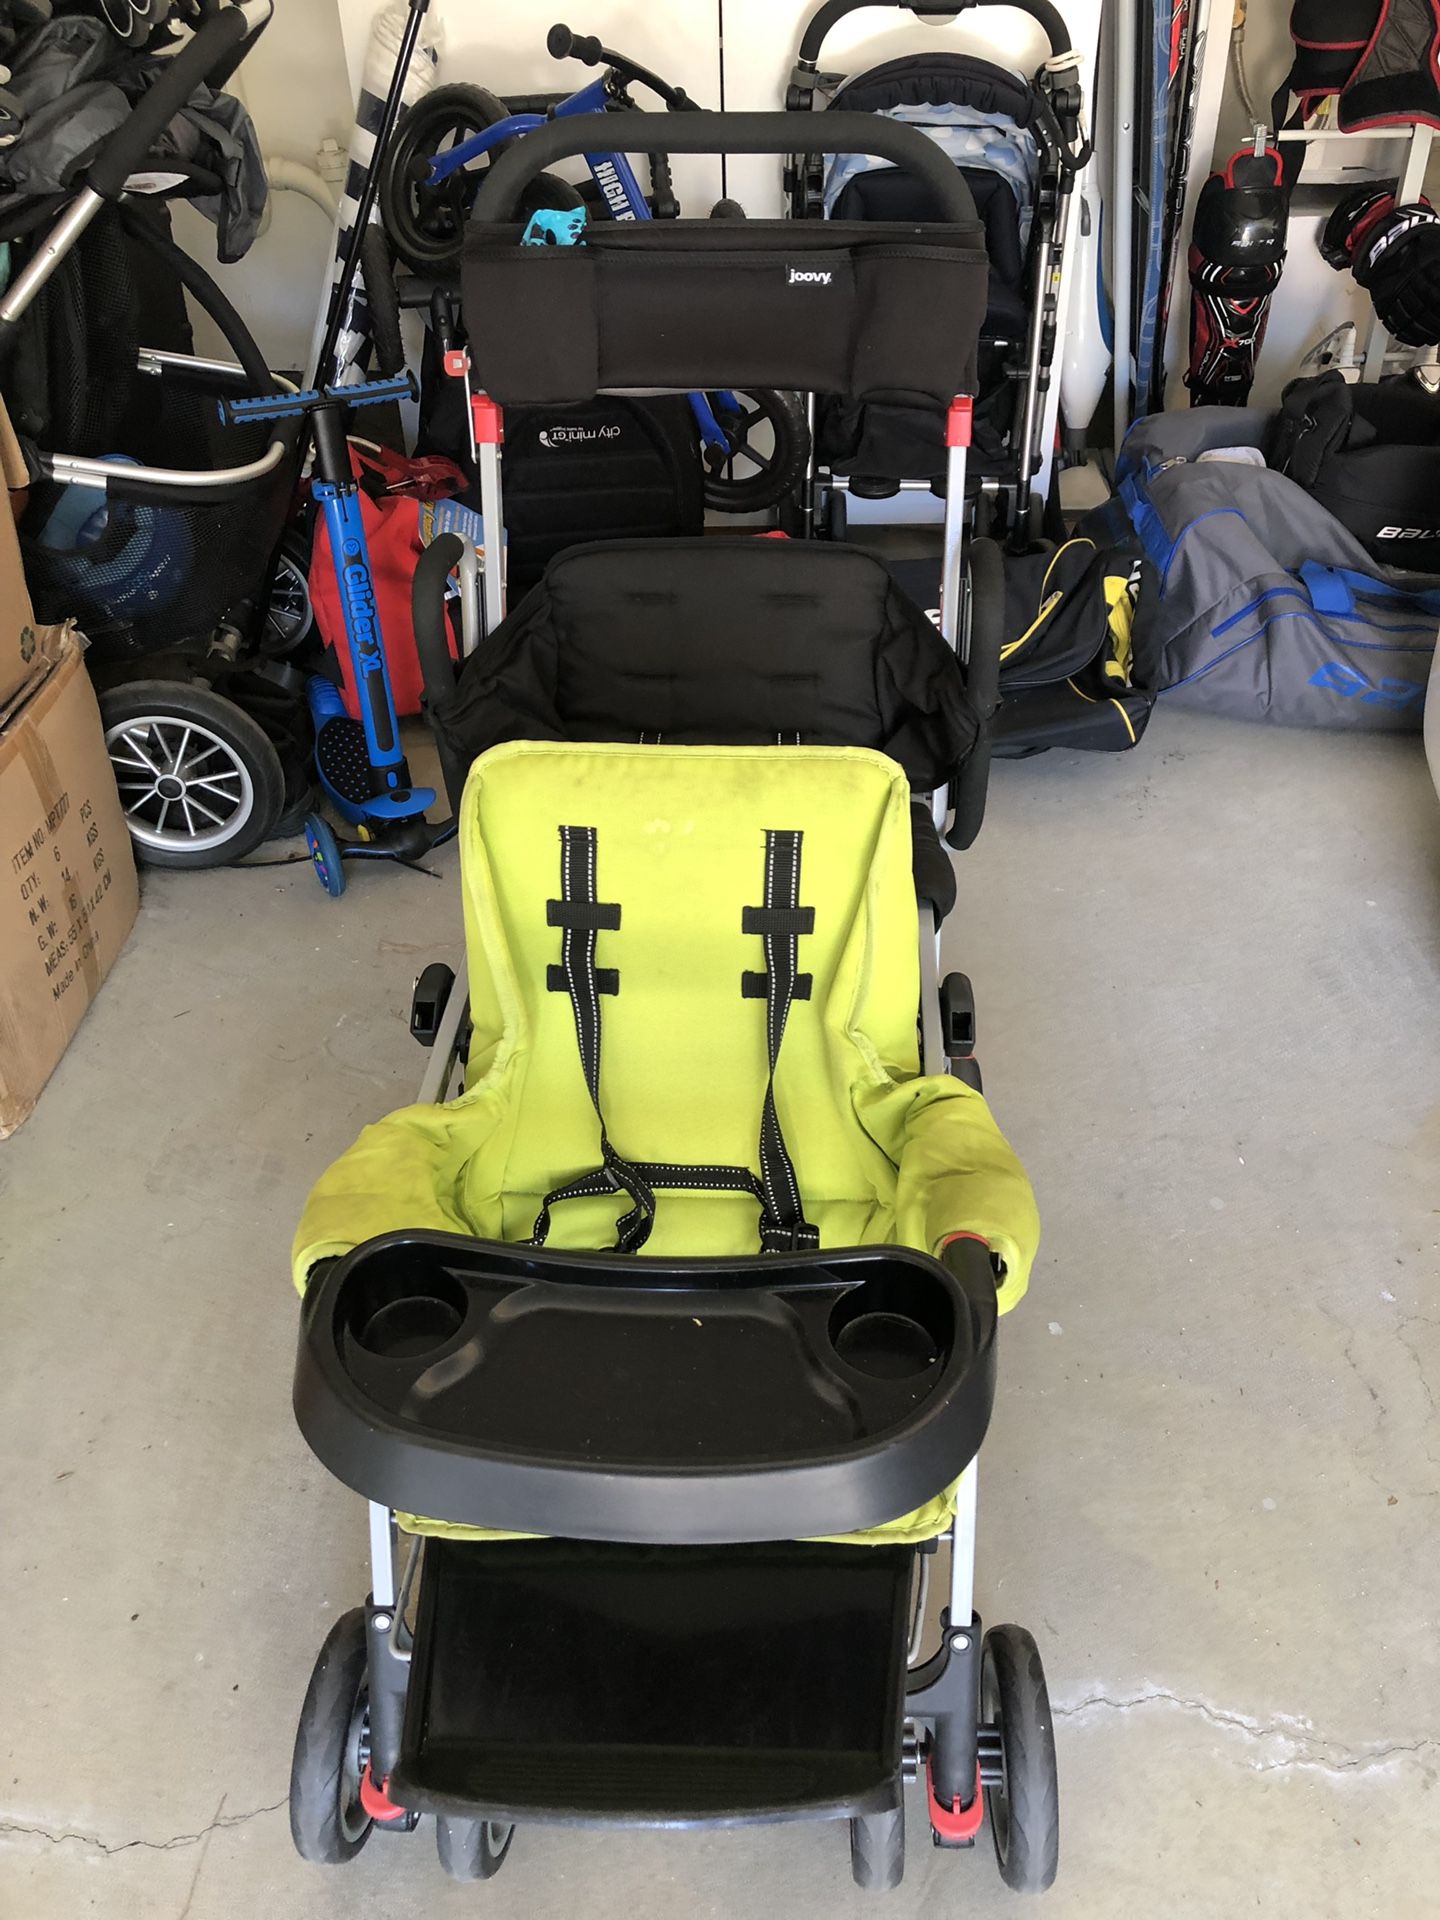 Joovy ultralight double stroller